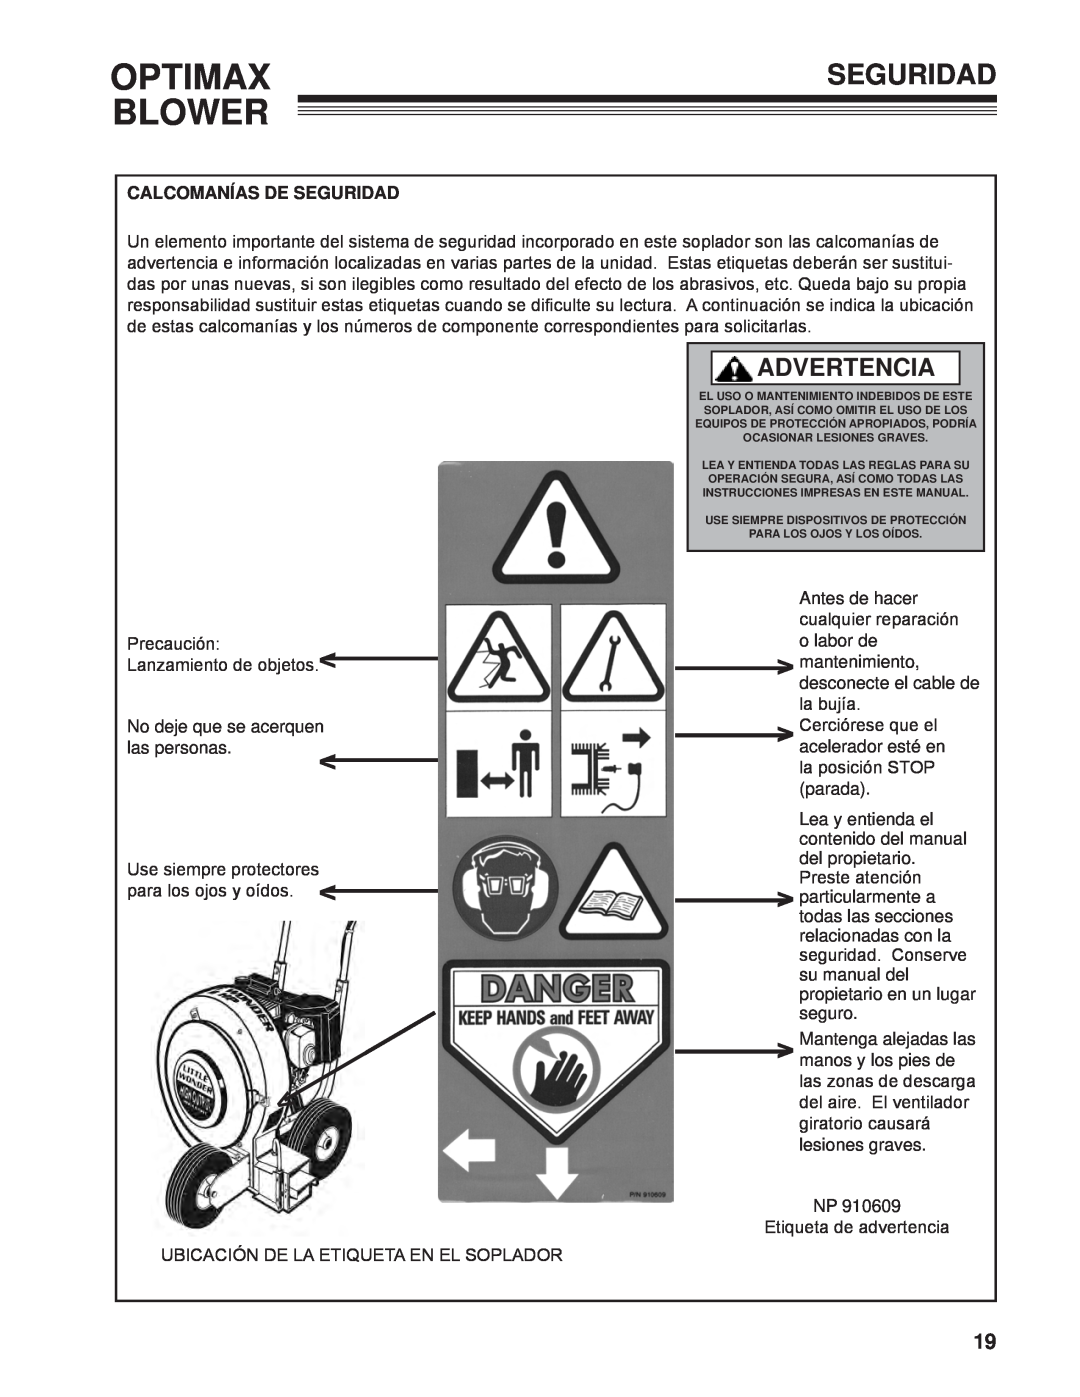 Little Wonder LB900-00-01 technical manual Optimax Blower, Advertencia, Calcomanías De Seguridad 